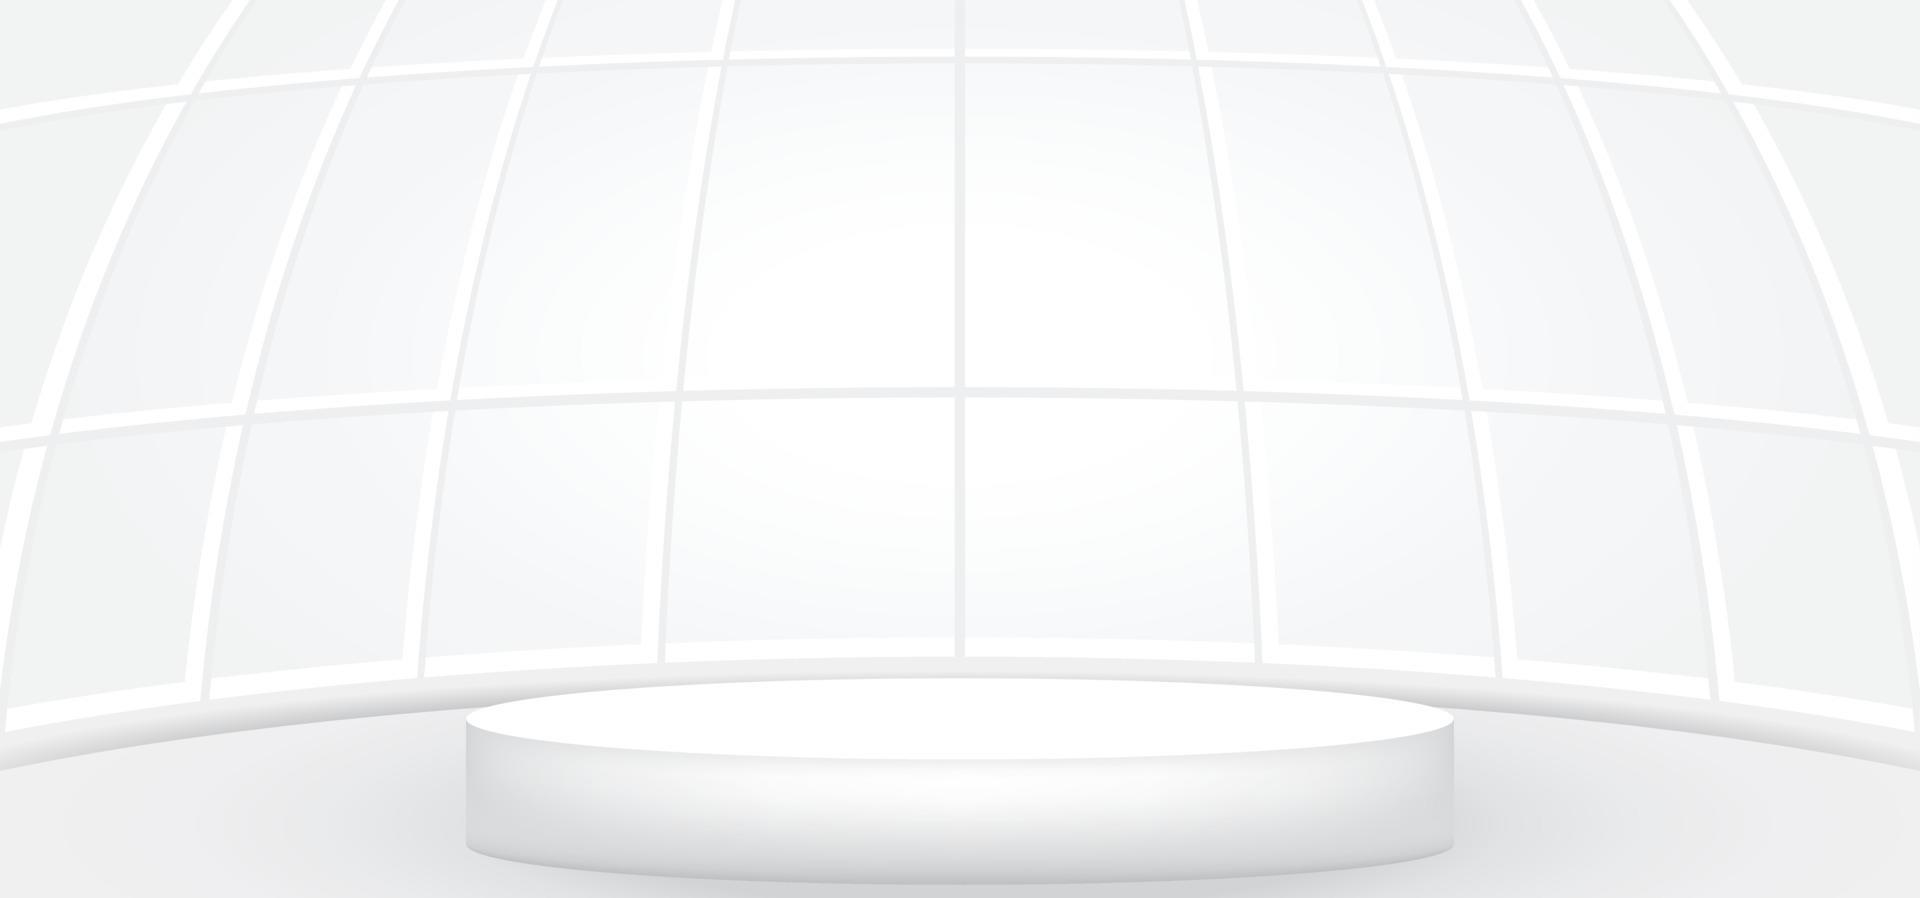 leeg wit kamer met wit ronde stadium of podium voor Scherm, presentatie, model, stadium voetstuk of montage Product. abstract interieur sjabloon vector illustratie voor achtergrond. 3d ronde toonzaal